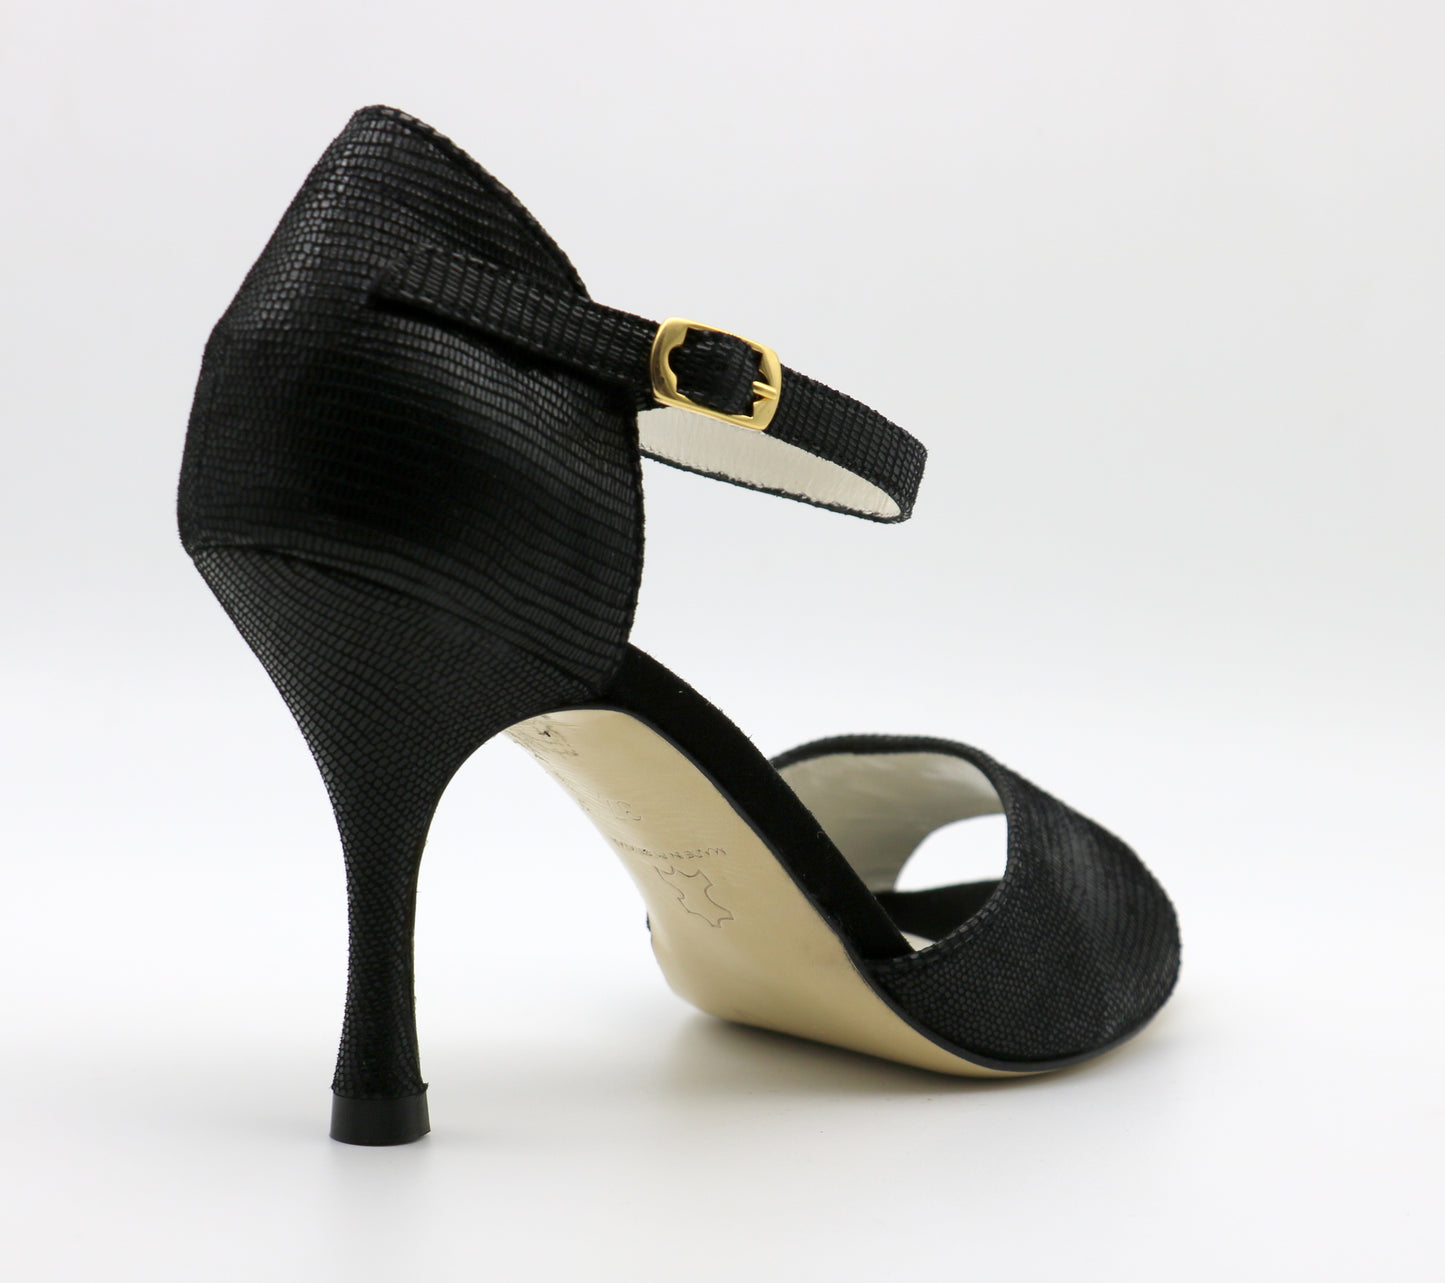 Flor Black leather snake-like heels 8cm